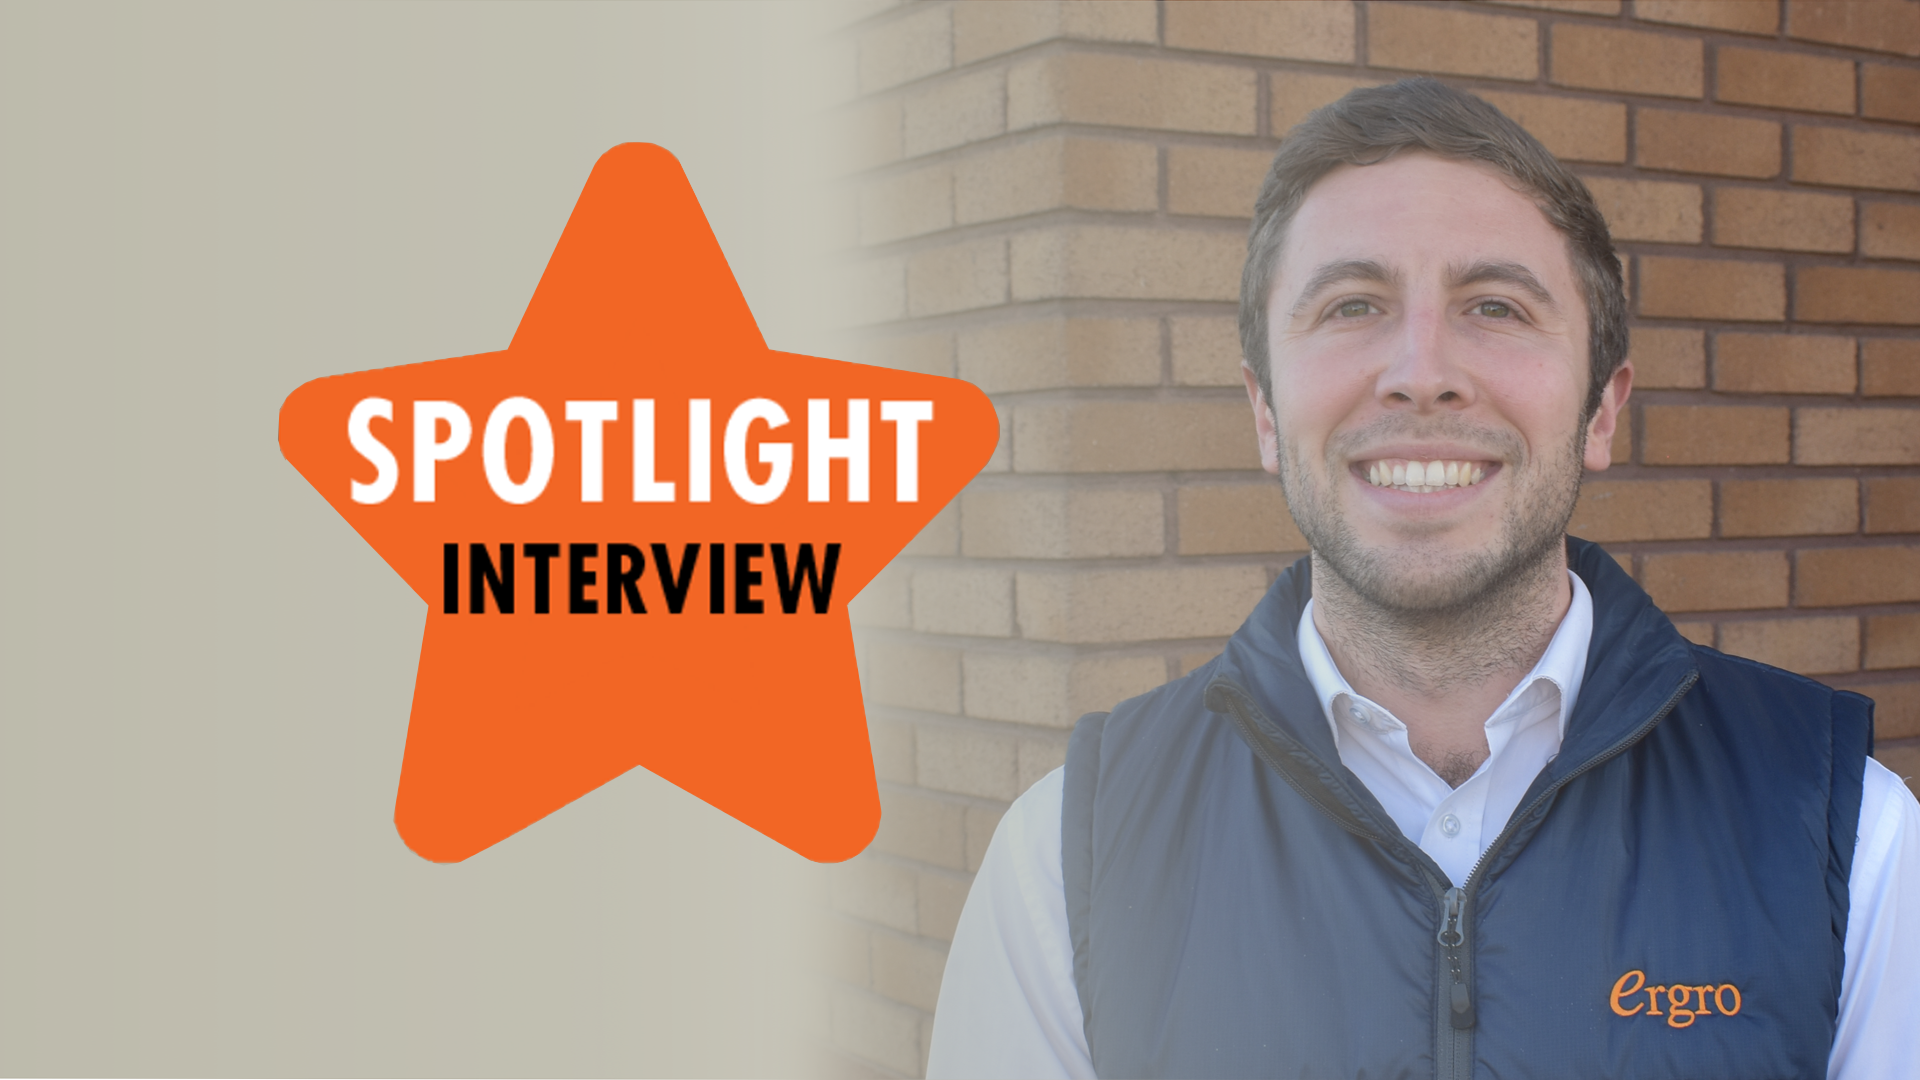 Spotlight Interview – Joel Brittain | Ergro